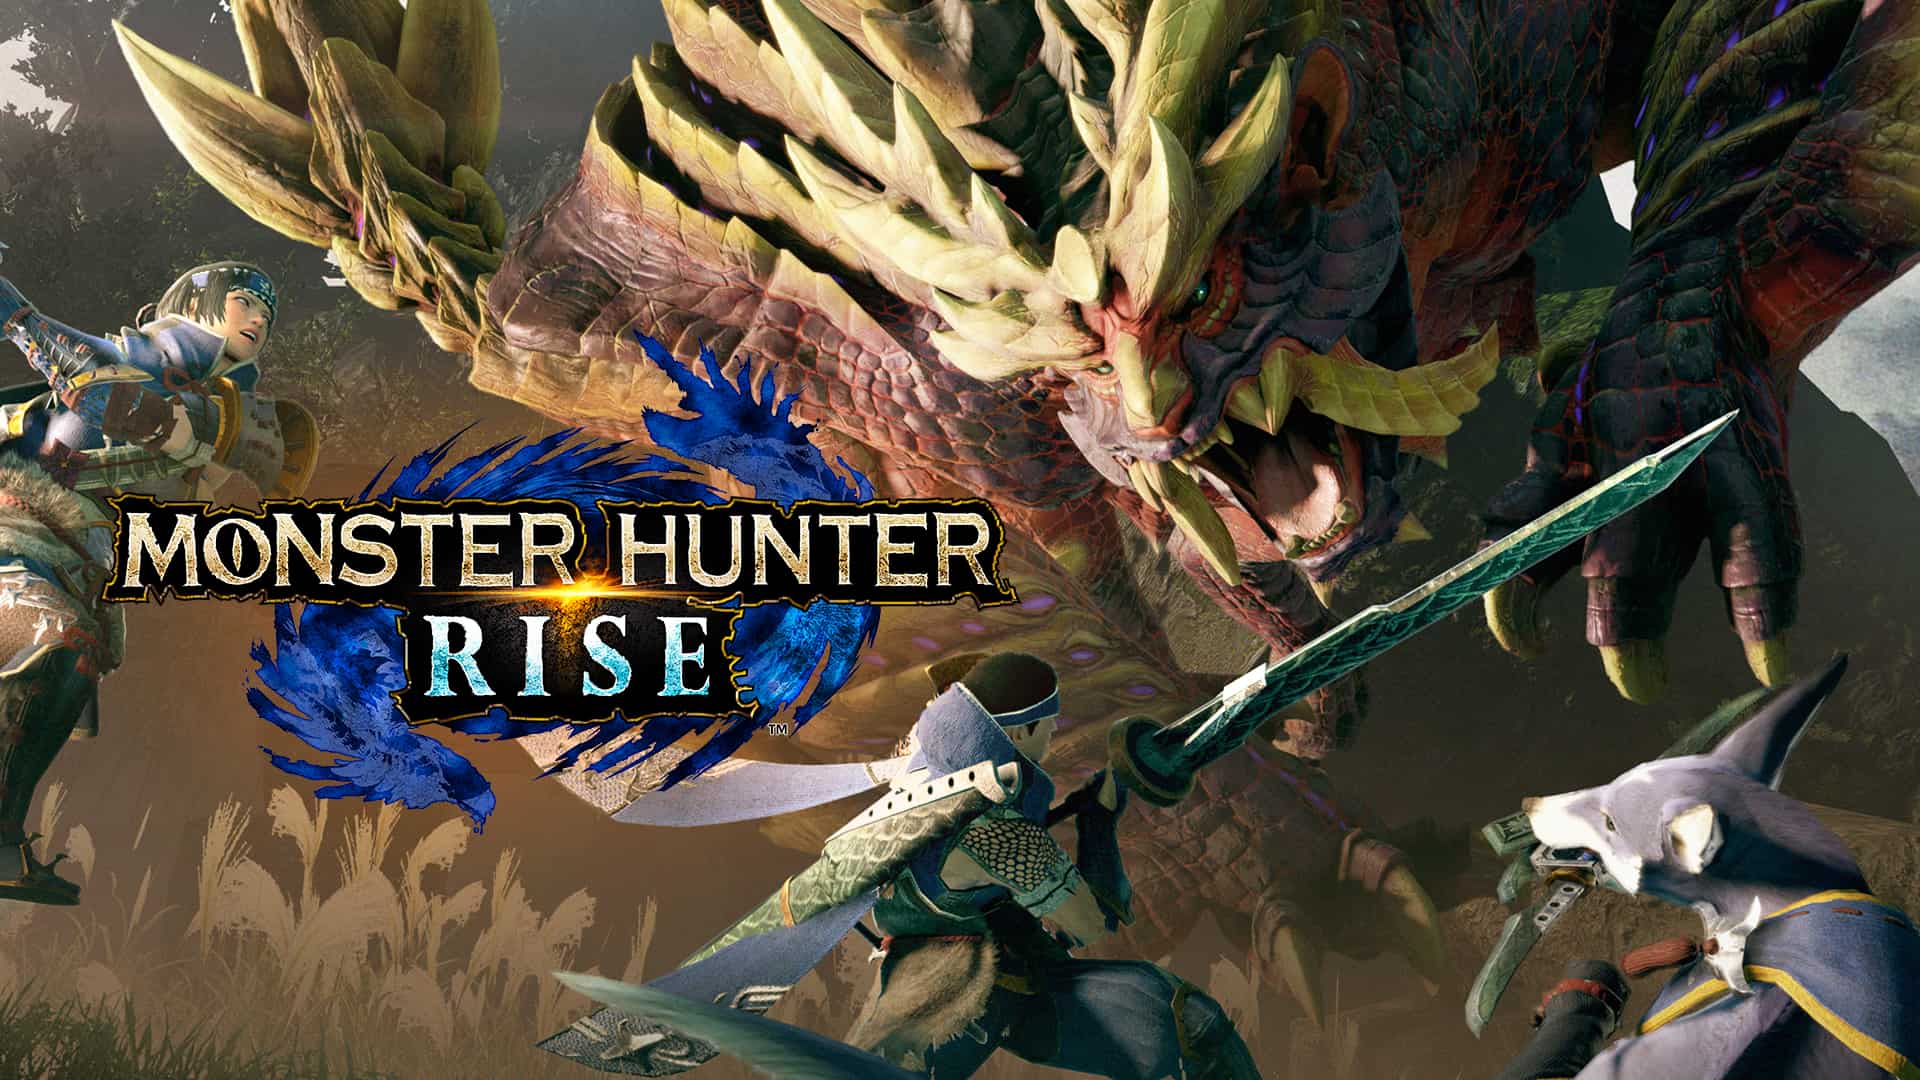 Monster Hunter Rise game release